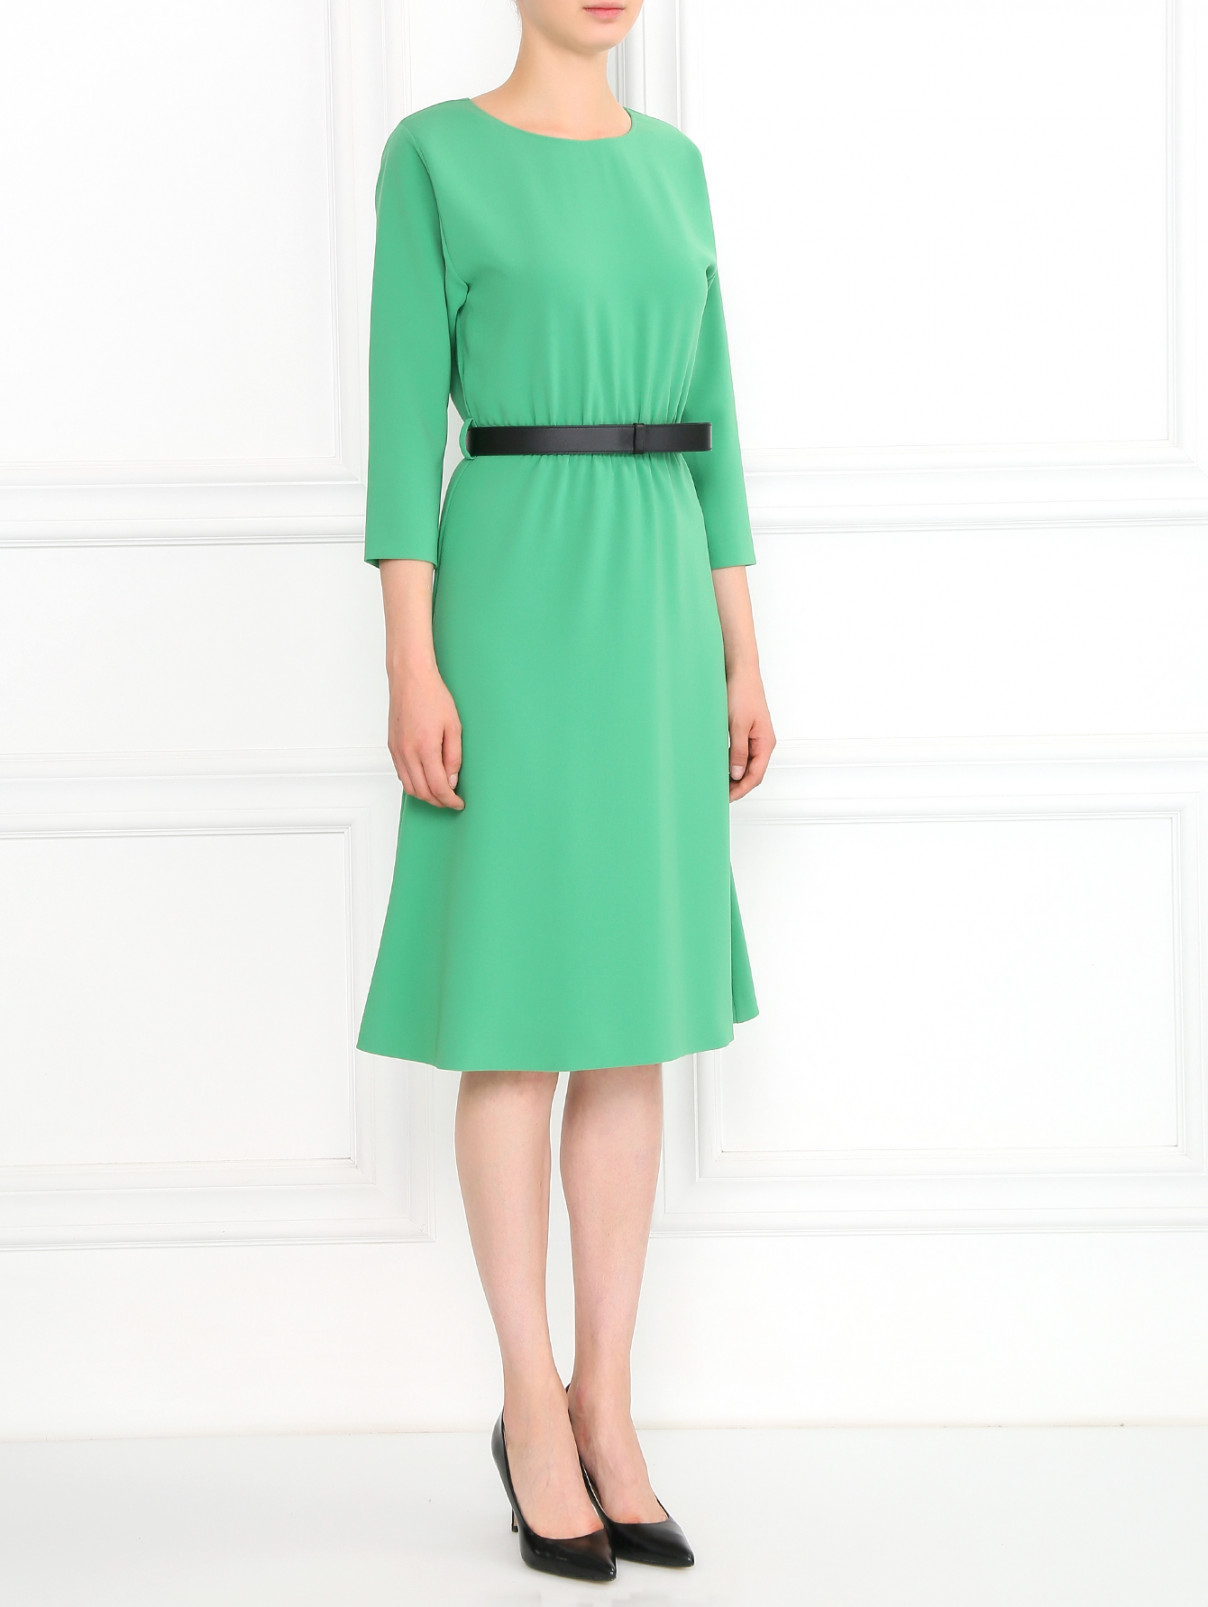 Платье-миди с рукавом 3/4 Moschino Boutique  –  Модель Общий вид  – Цвет:  Зеленый